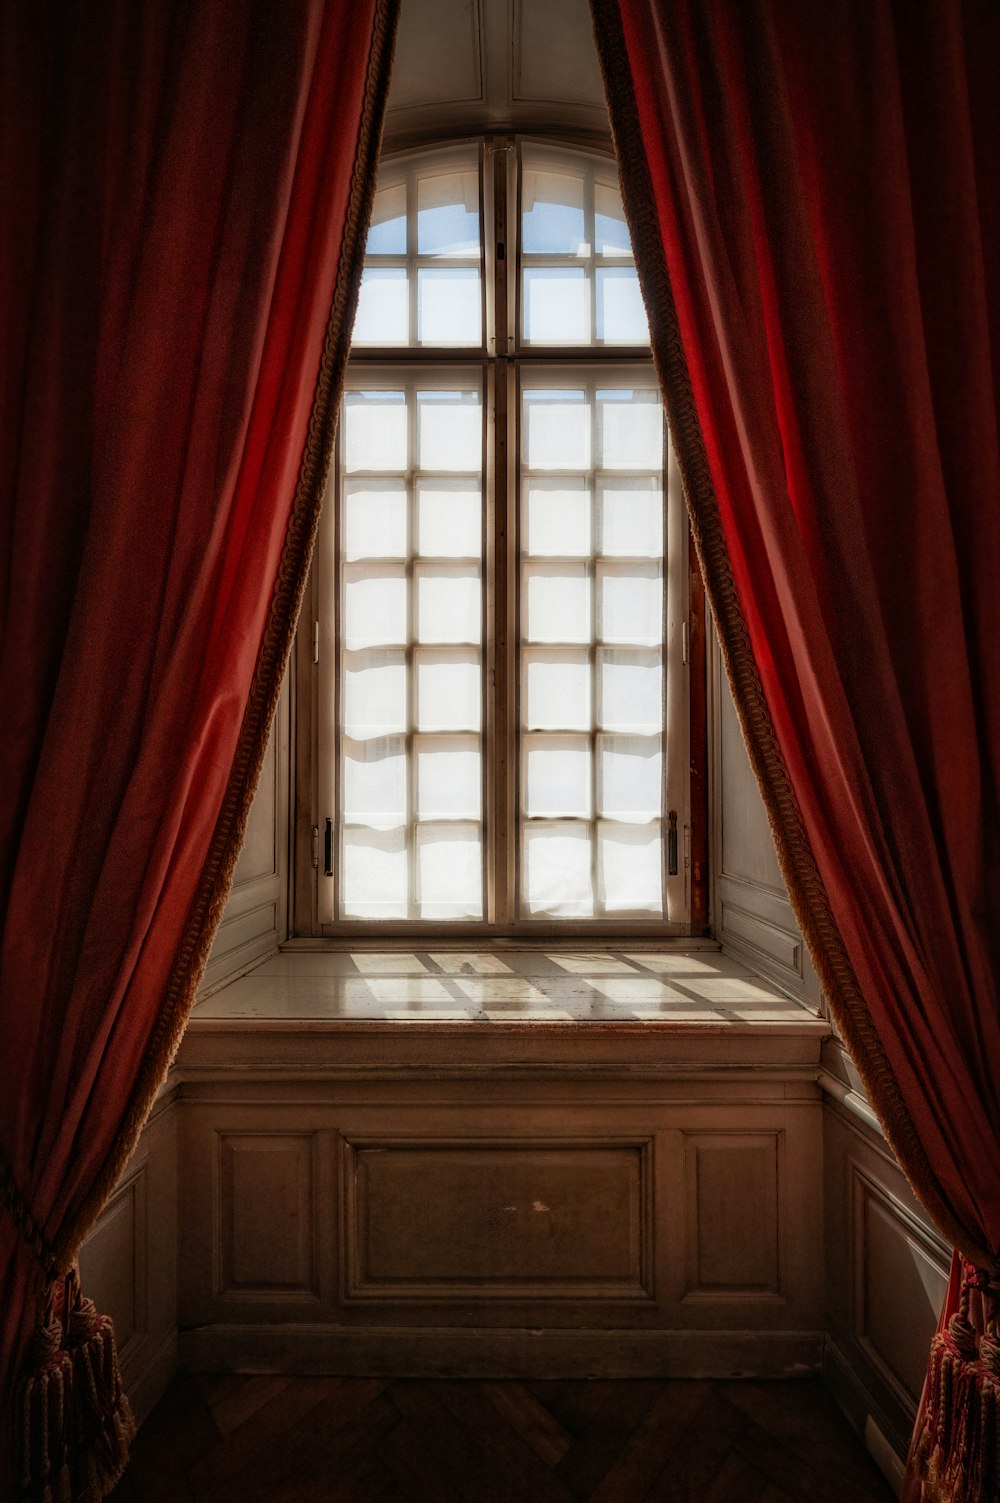 Una finestra con tende rosse foto – Passato Immagine gratuita su Unsplash